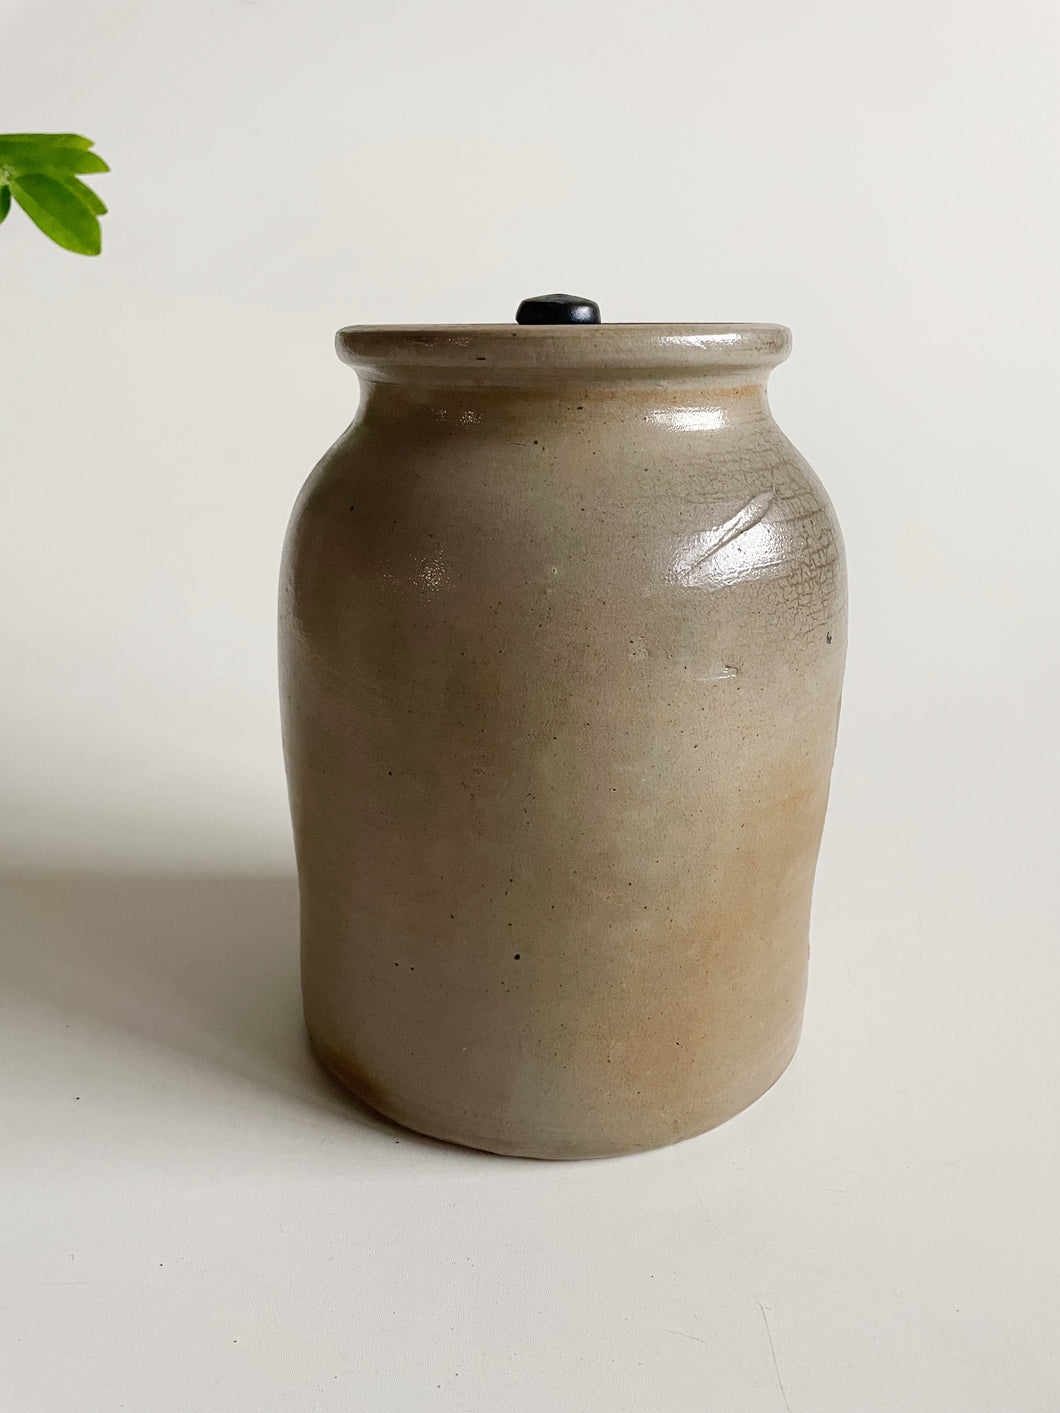 Potter Jar / Vase